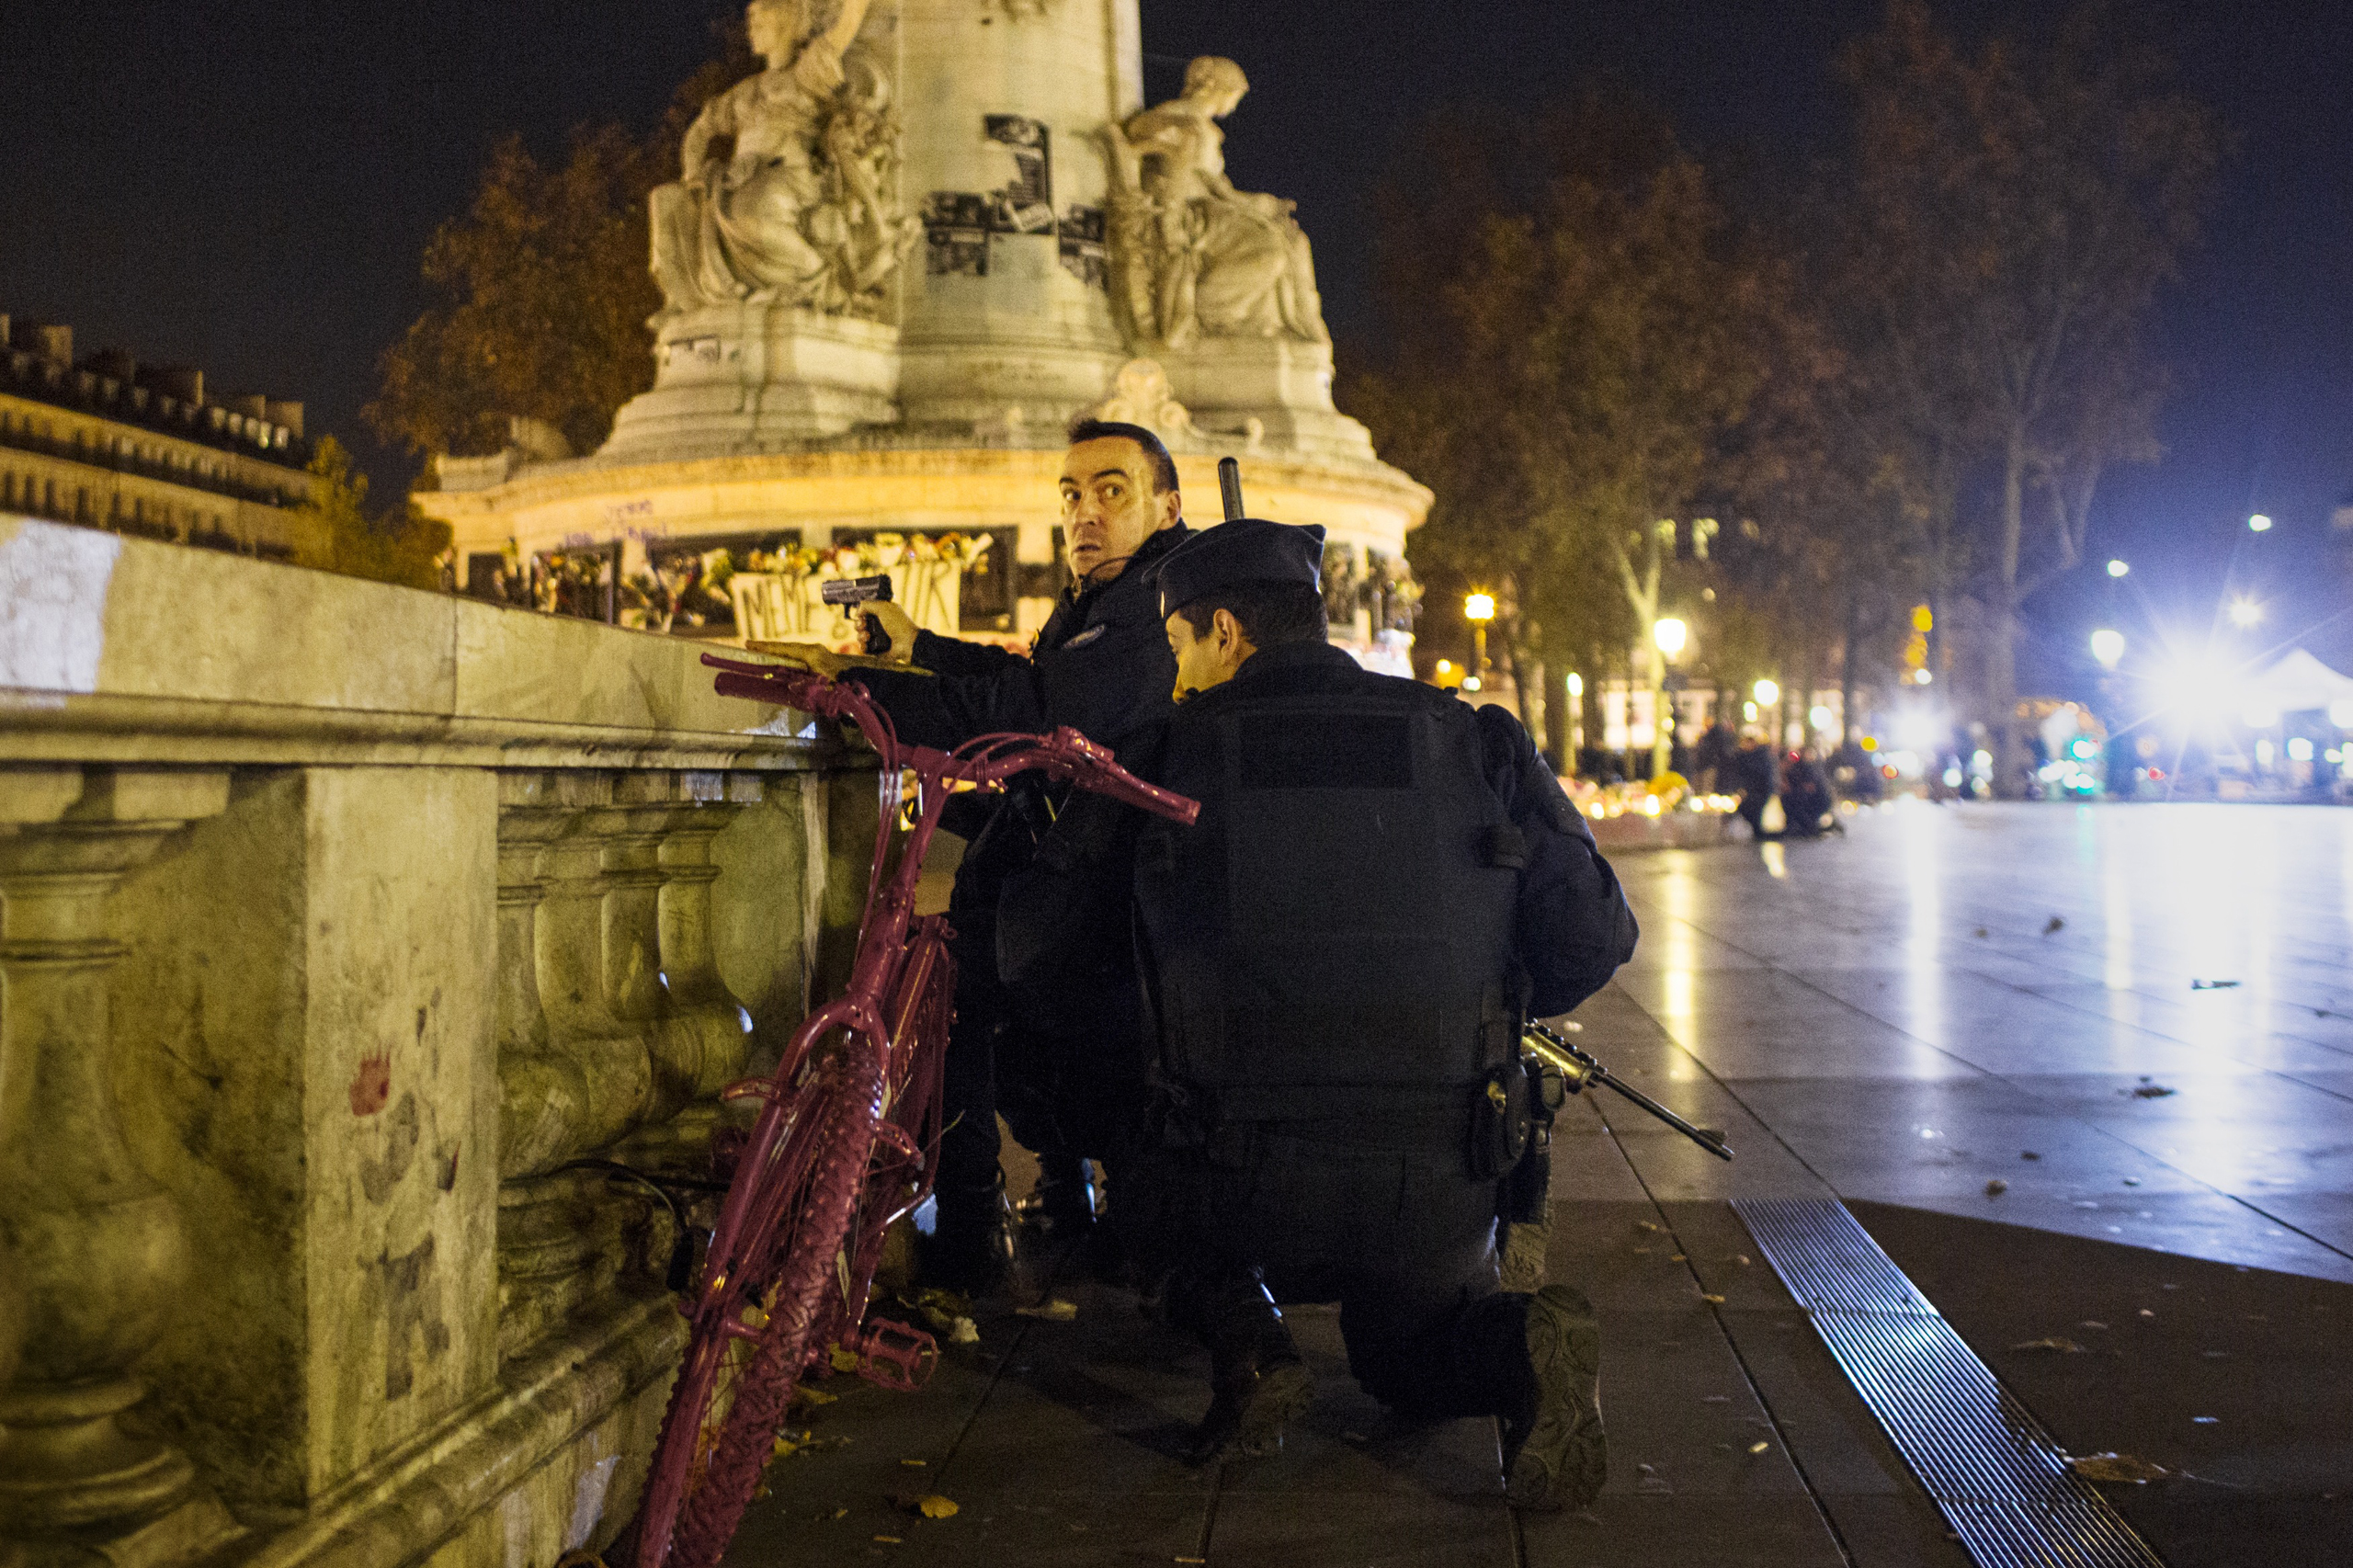 Armed police take aim in Paris’ Place de la République during a false alarm on Nov. 15 (William Daniels—Panos)